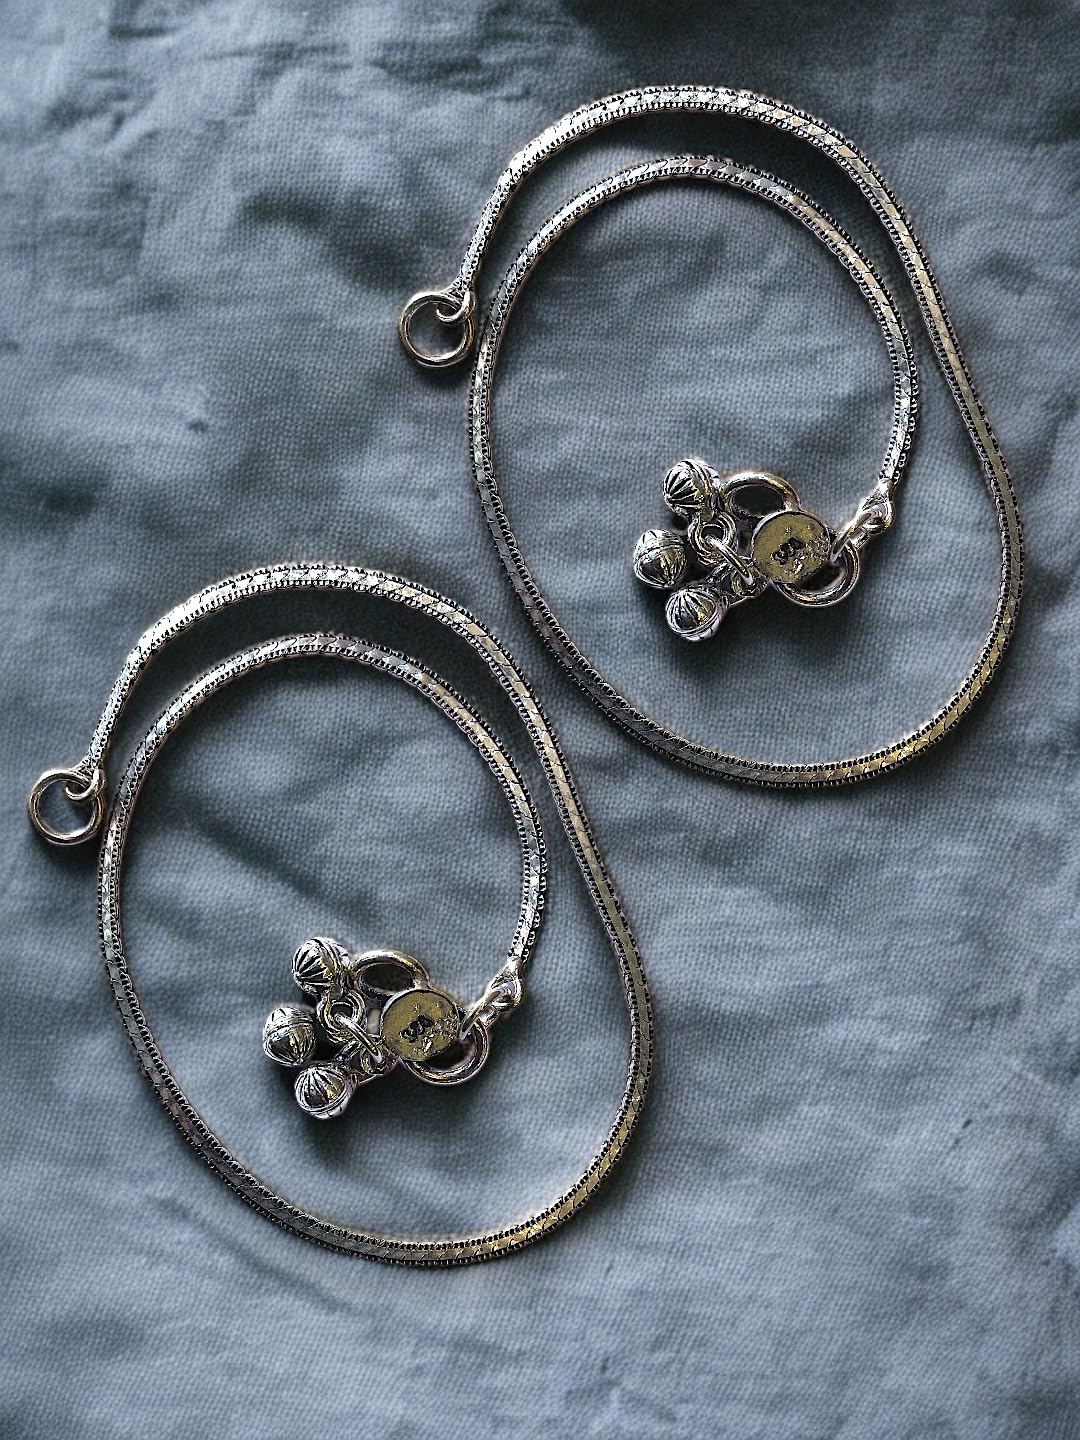 JEWELYAARIâ¢ 925 Silver Vintage charm anklets handmade chain anklet Payal crafted from sterling silver for Womens and Girls